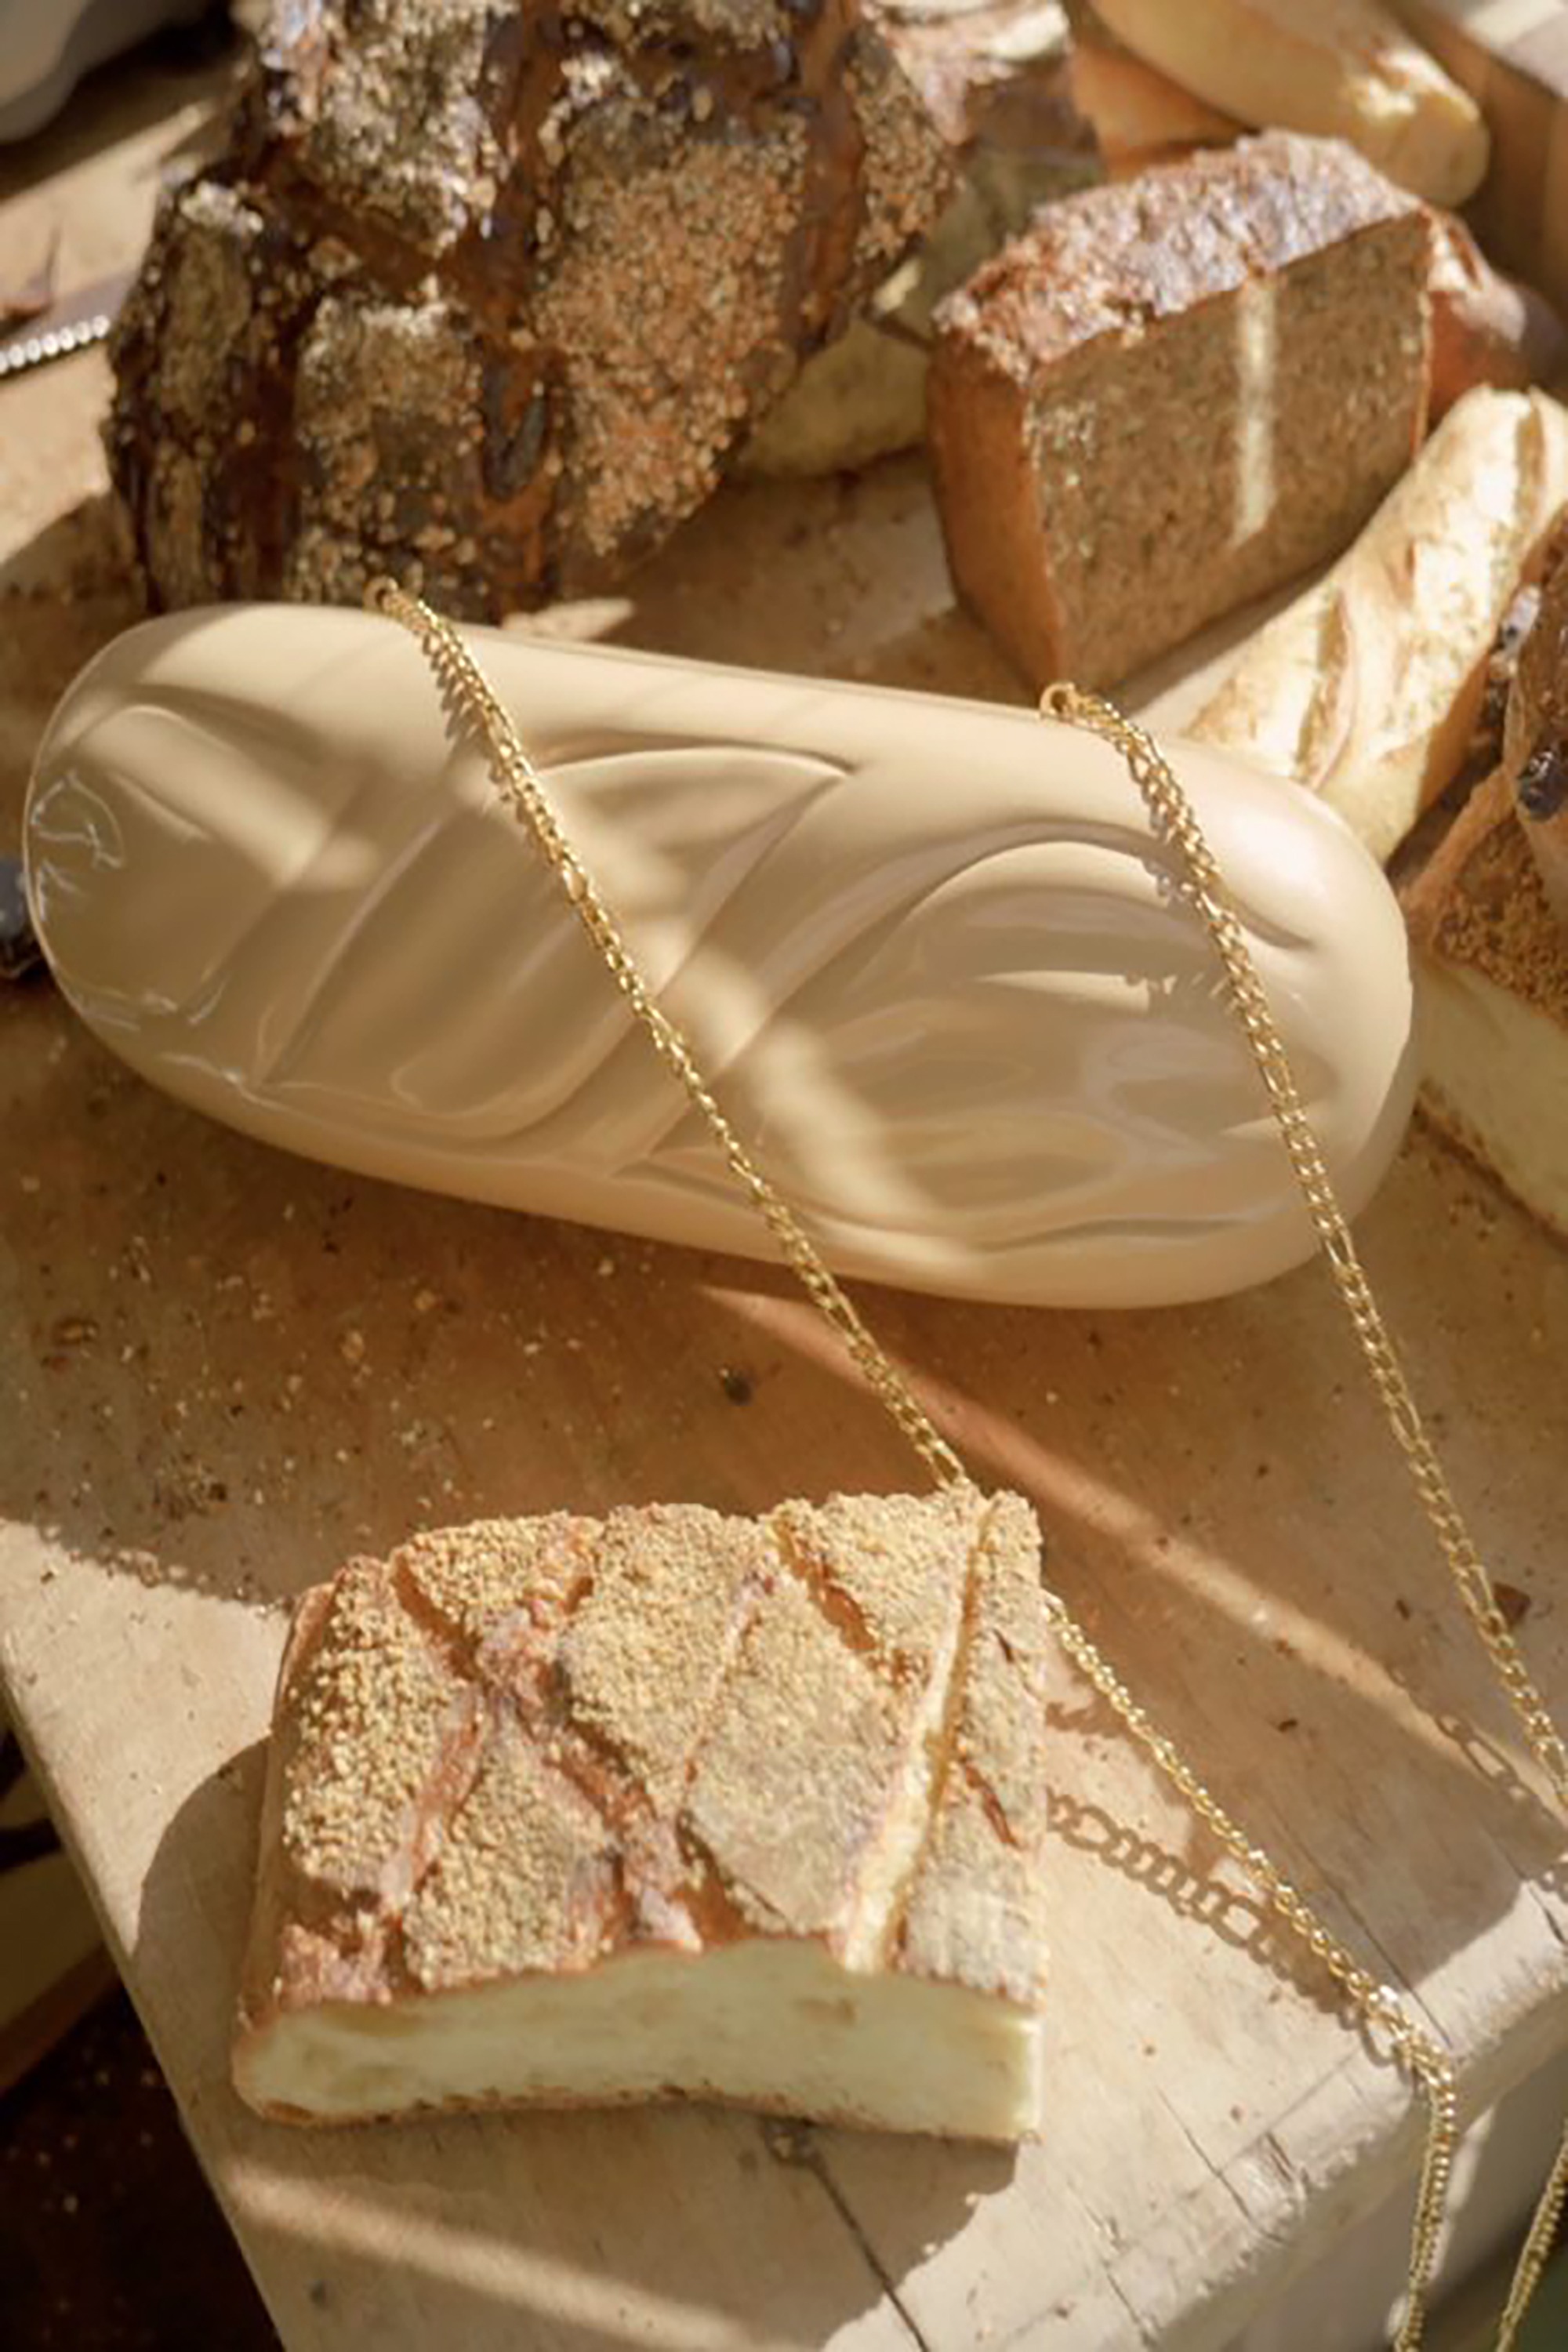 một chiếc túi cầm tay, có hình dáng giống như bánh mì baguette của Pháp, được làm bằng gỗ keo và có thể đeo trên vai nhờ dây xích kim loại vàng.